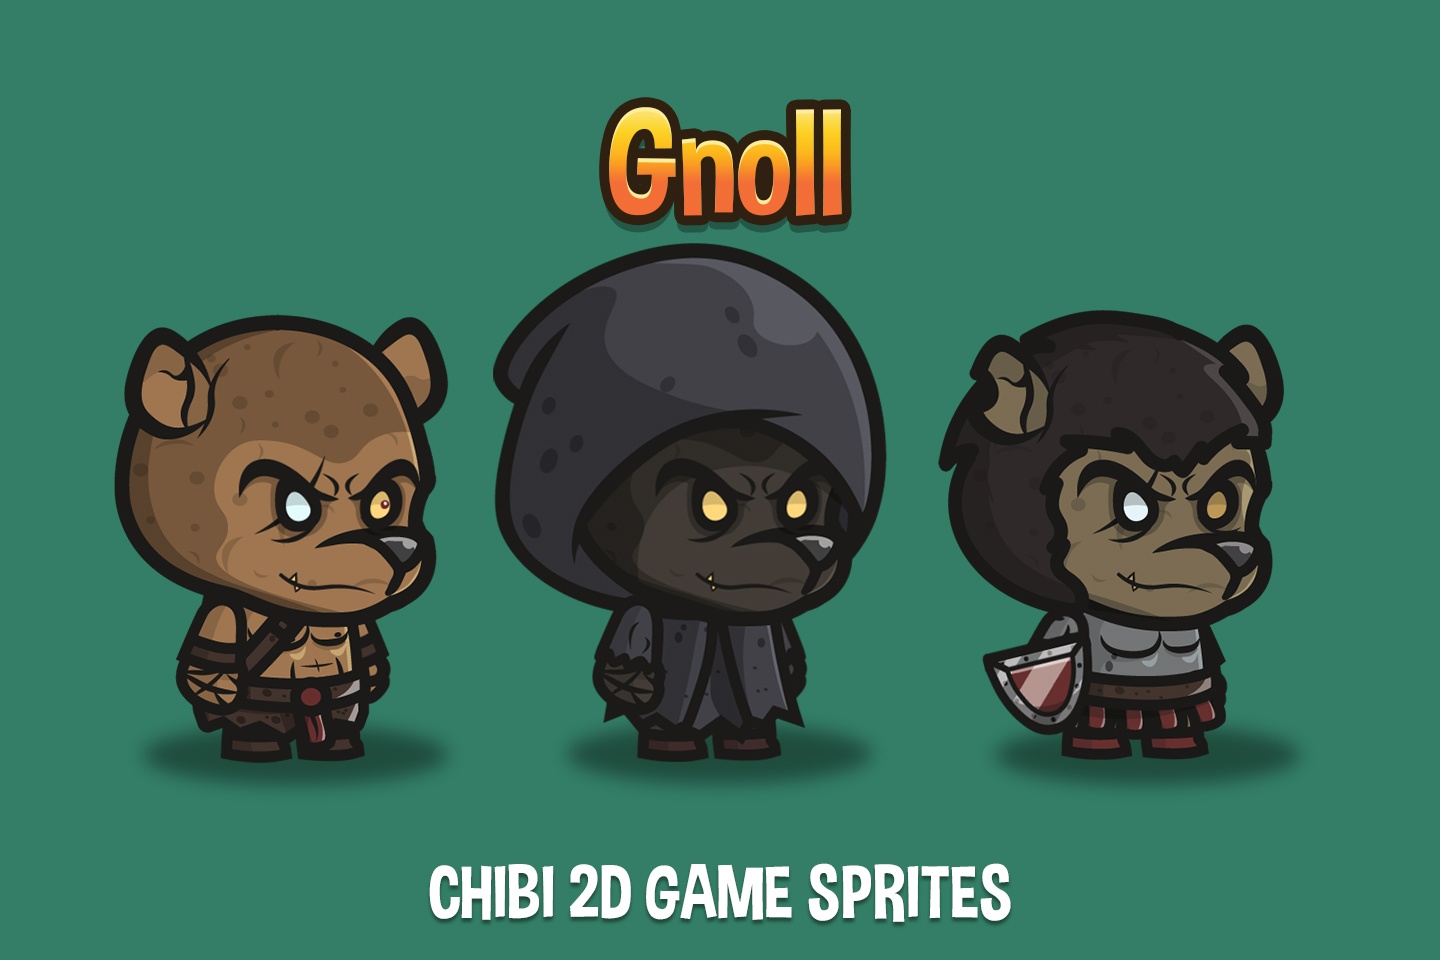 Nhân vật chibi Gnoll trong game 2D (Gnoll Chibi 2D Game Sprites): Dễ thương và đáng yêu, bạn sẽ không muốn rời mắt khỏi nhân vật chibi Gnoll này! Với các trang phục và đặc trưng của các nhân vật chibi, bạn sẽ có một trải nghiệm chơi game tuyệt vời ở mọi lứa tuổi. Hãy tham gia và khám phá thế giới 2D đầy màu sắc của chúng tôi ngay hôm nay!